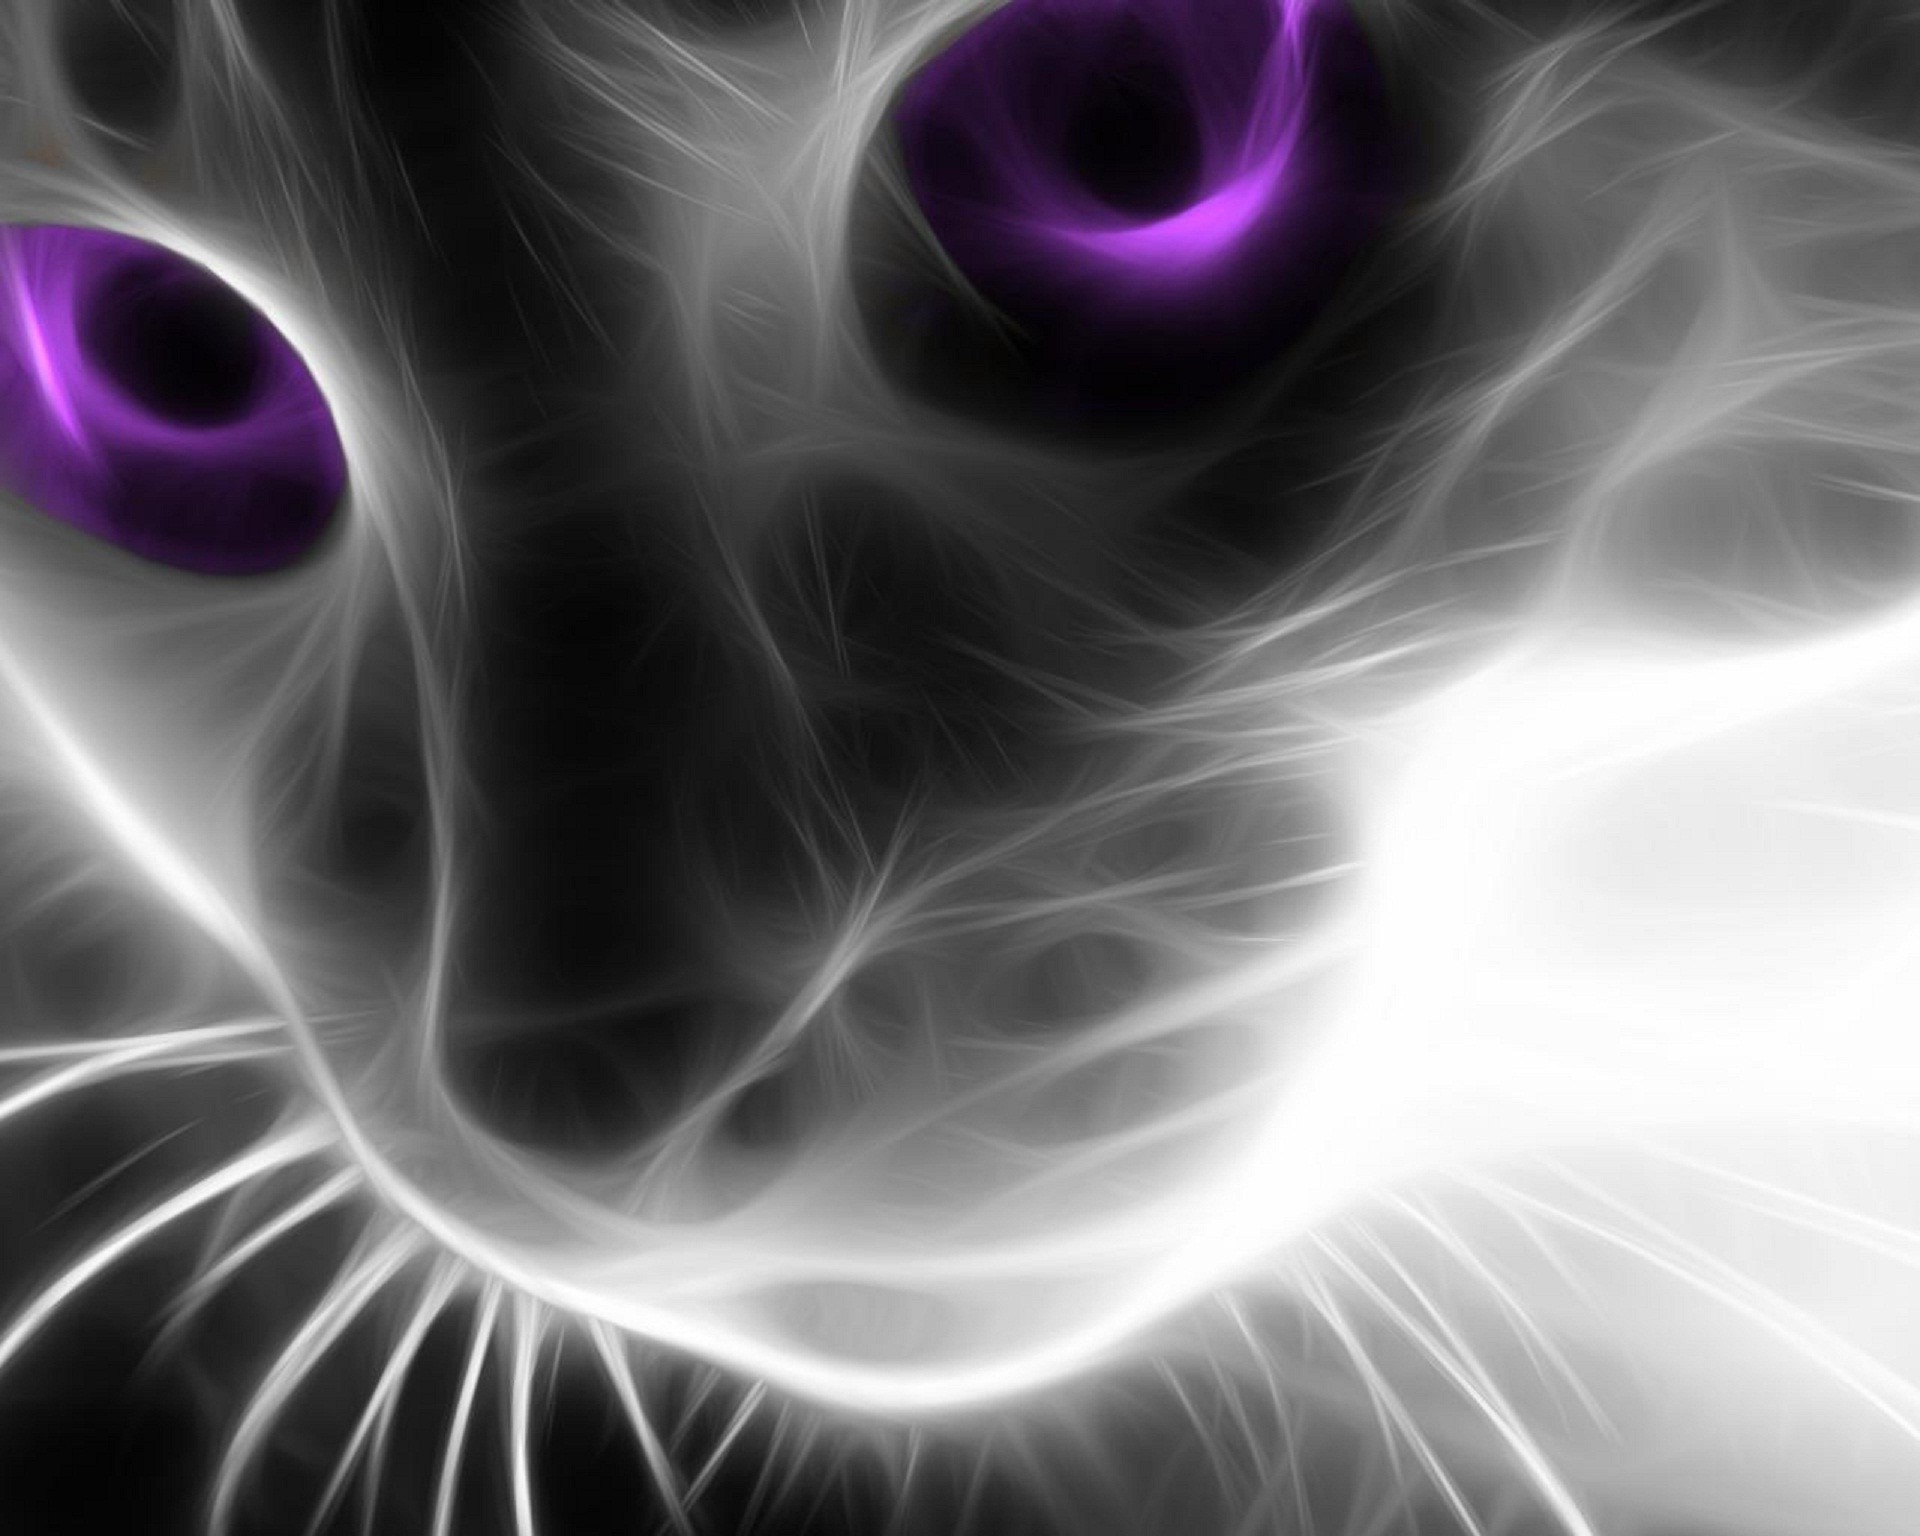 Картинку чтоб поставить. Чёрный кот с синими глазами. Офигенные картинки. Кошка 3д. Аватарка.